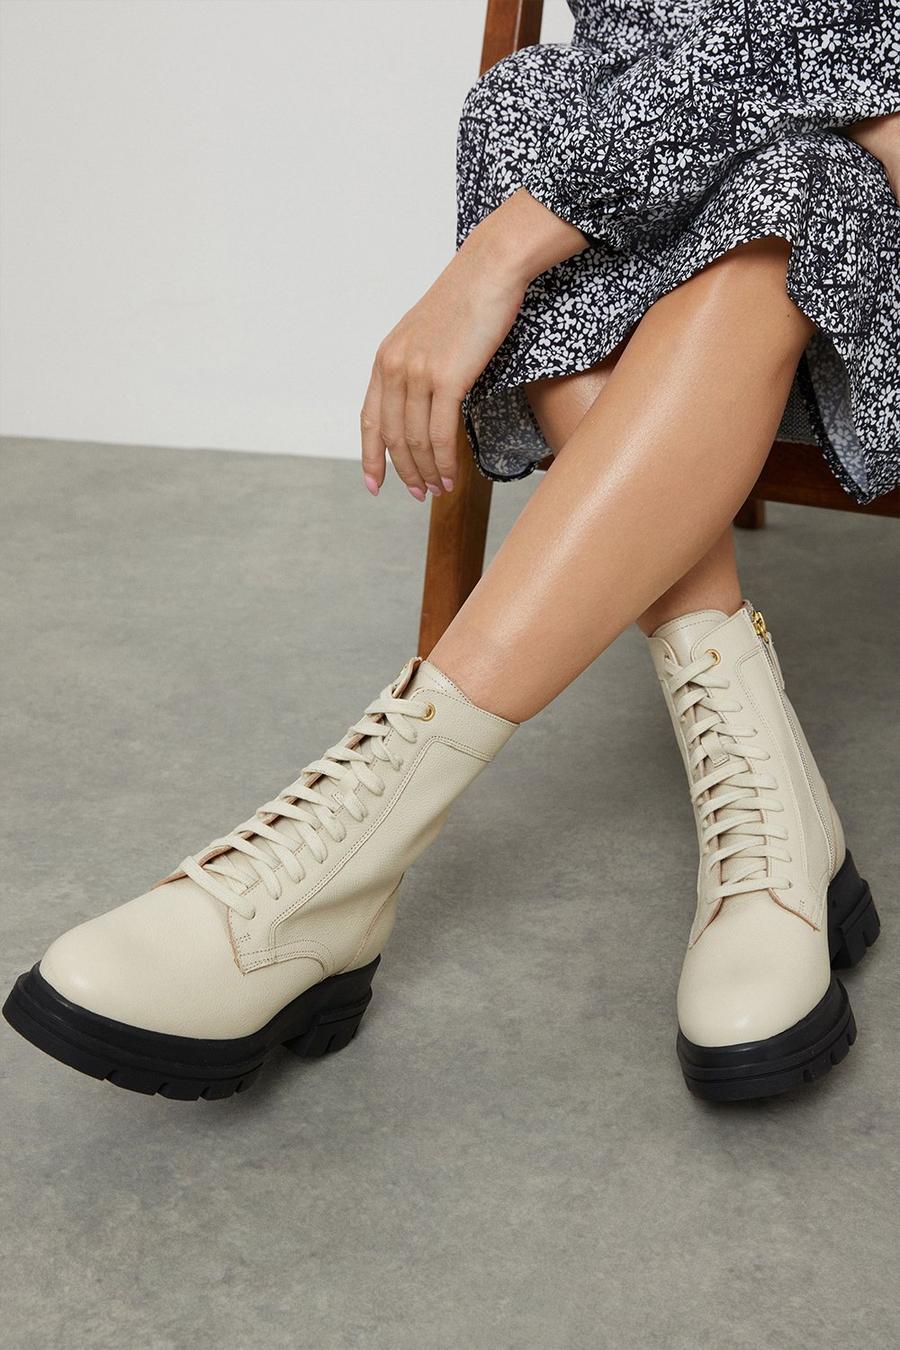 Faith: Oprah Gum Sole Leather Lace Up Boots